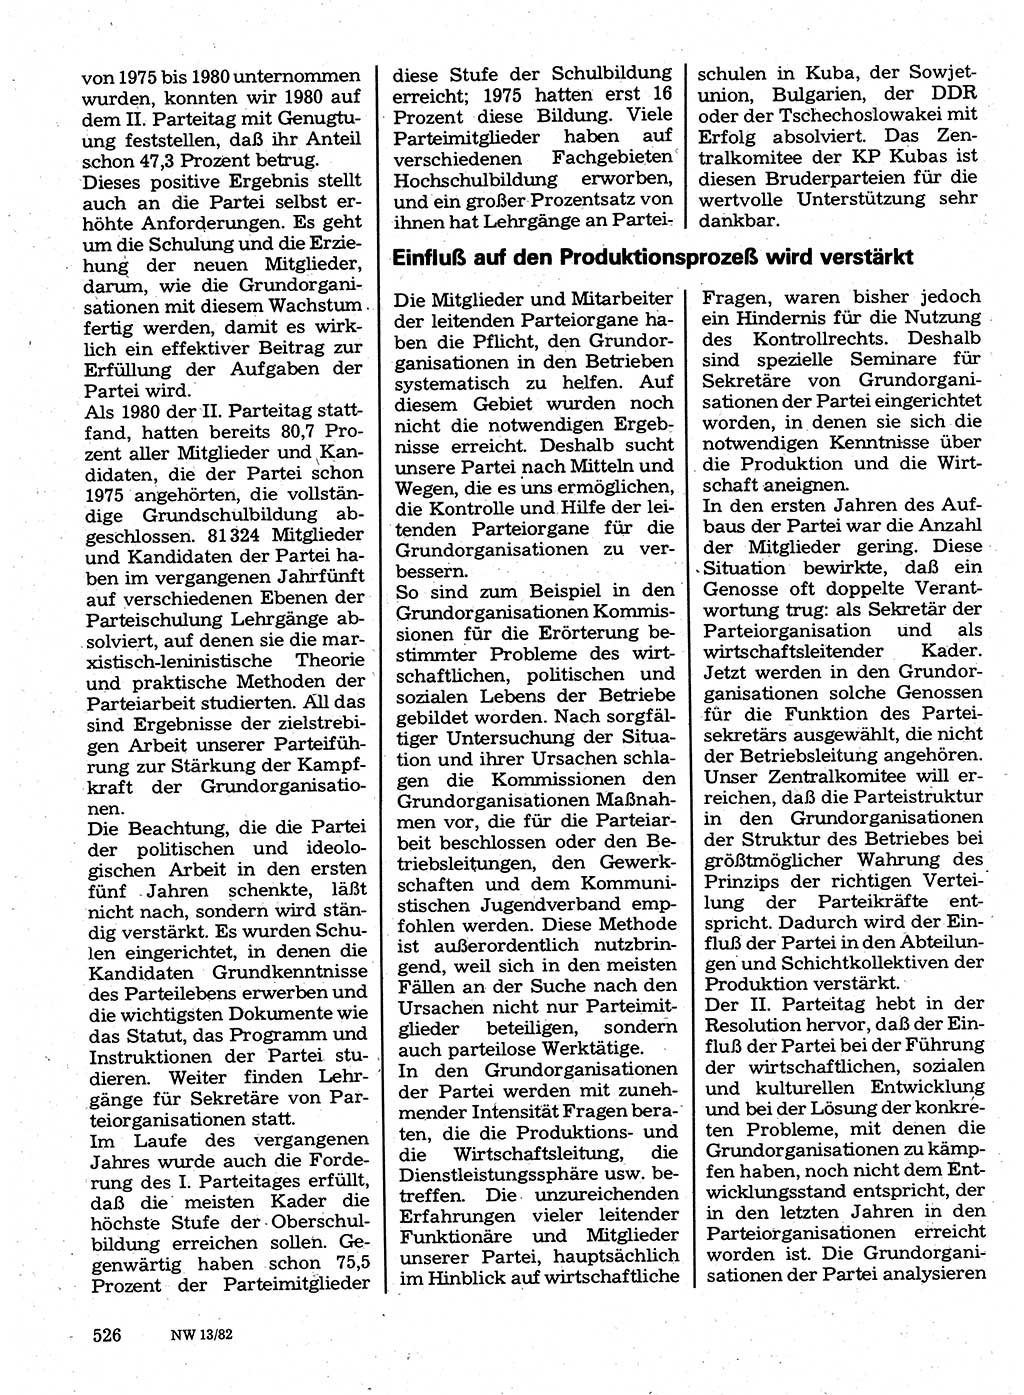 Neuer Weg (NW), Organ des Zentralkomitees (ZK) der SED (Sozialistische Einheitspartei Deutschlands) für Fragen des Parteilebens, 37. Jahrgang [Deutsche Demokratische Republik (DDR)] 1982, Seite 526 (NW ZK SED DDR 1982, S. 526)